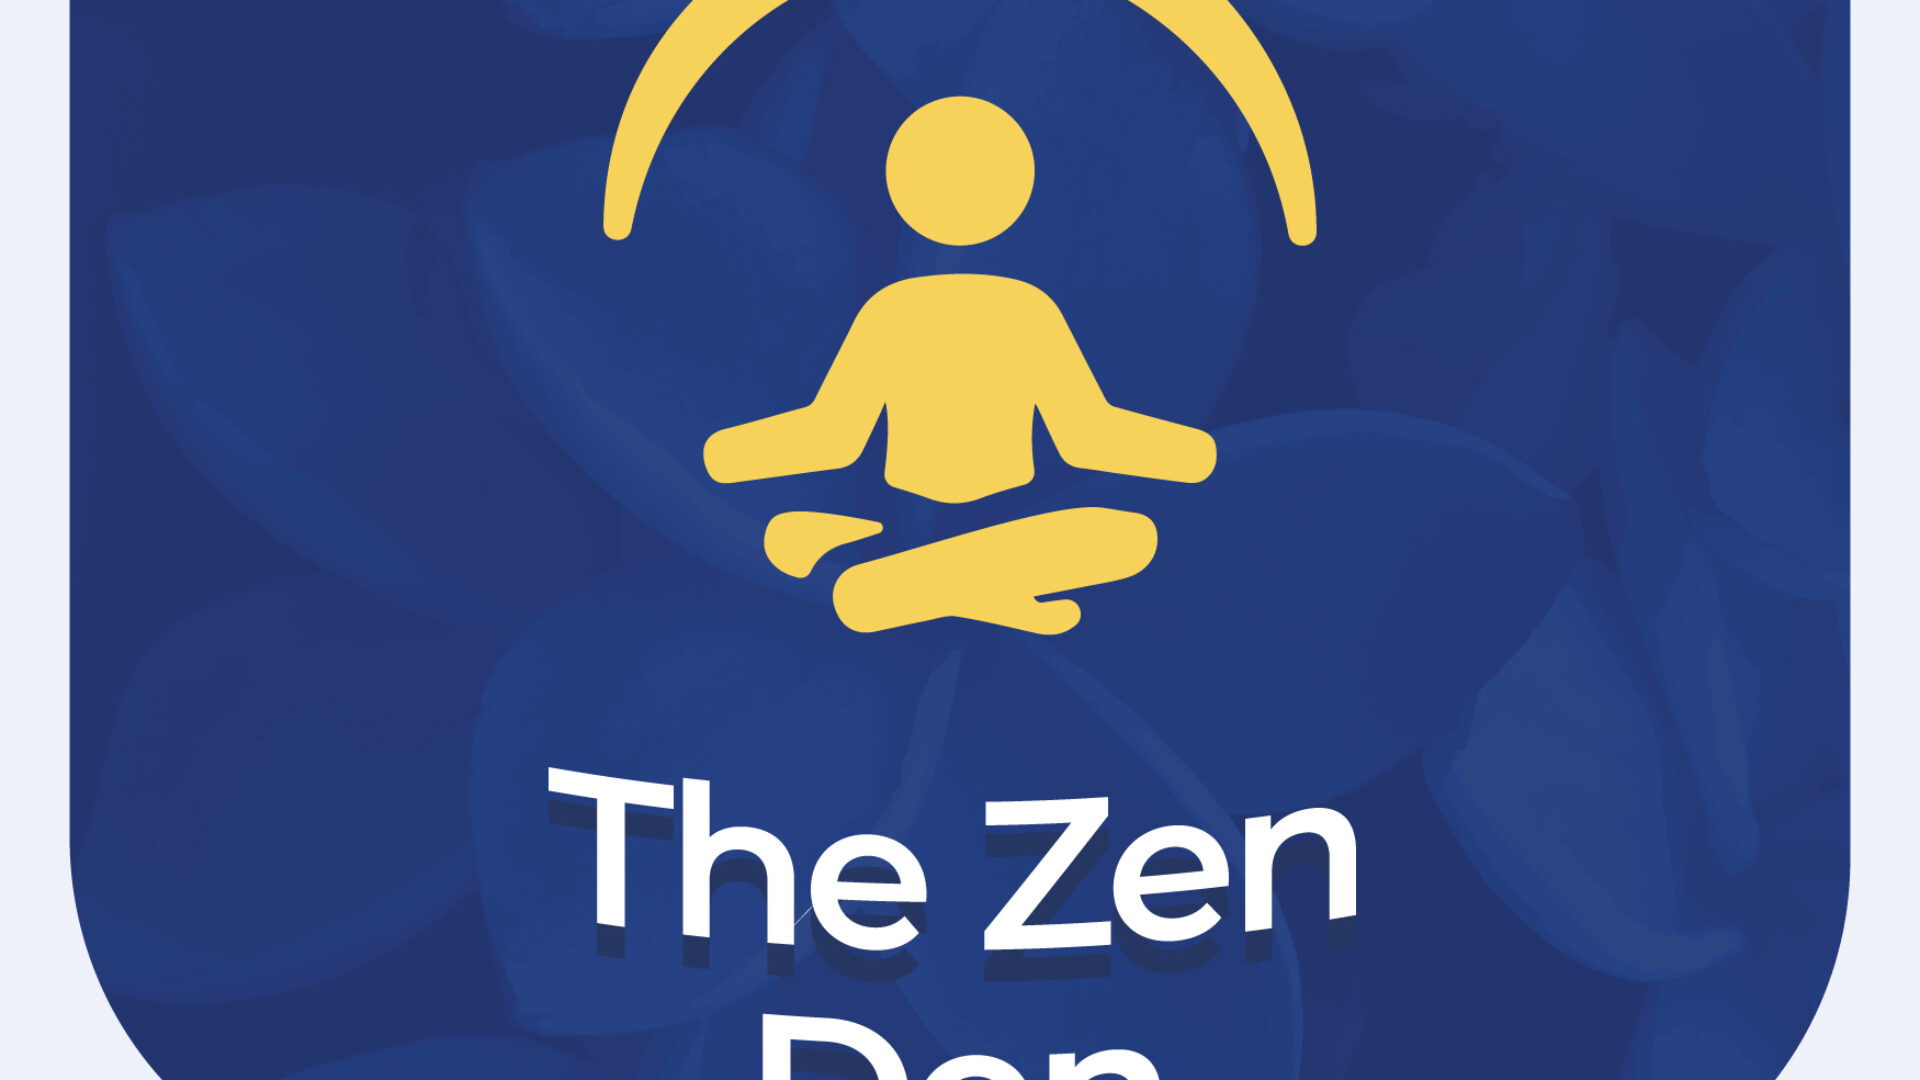 The Zen Den